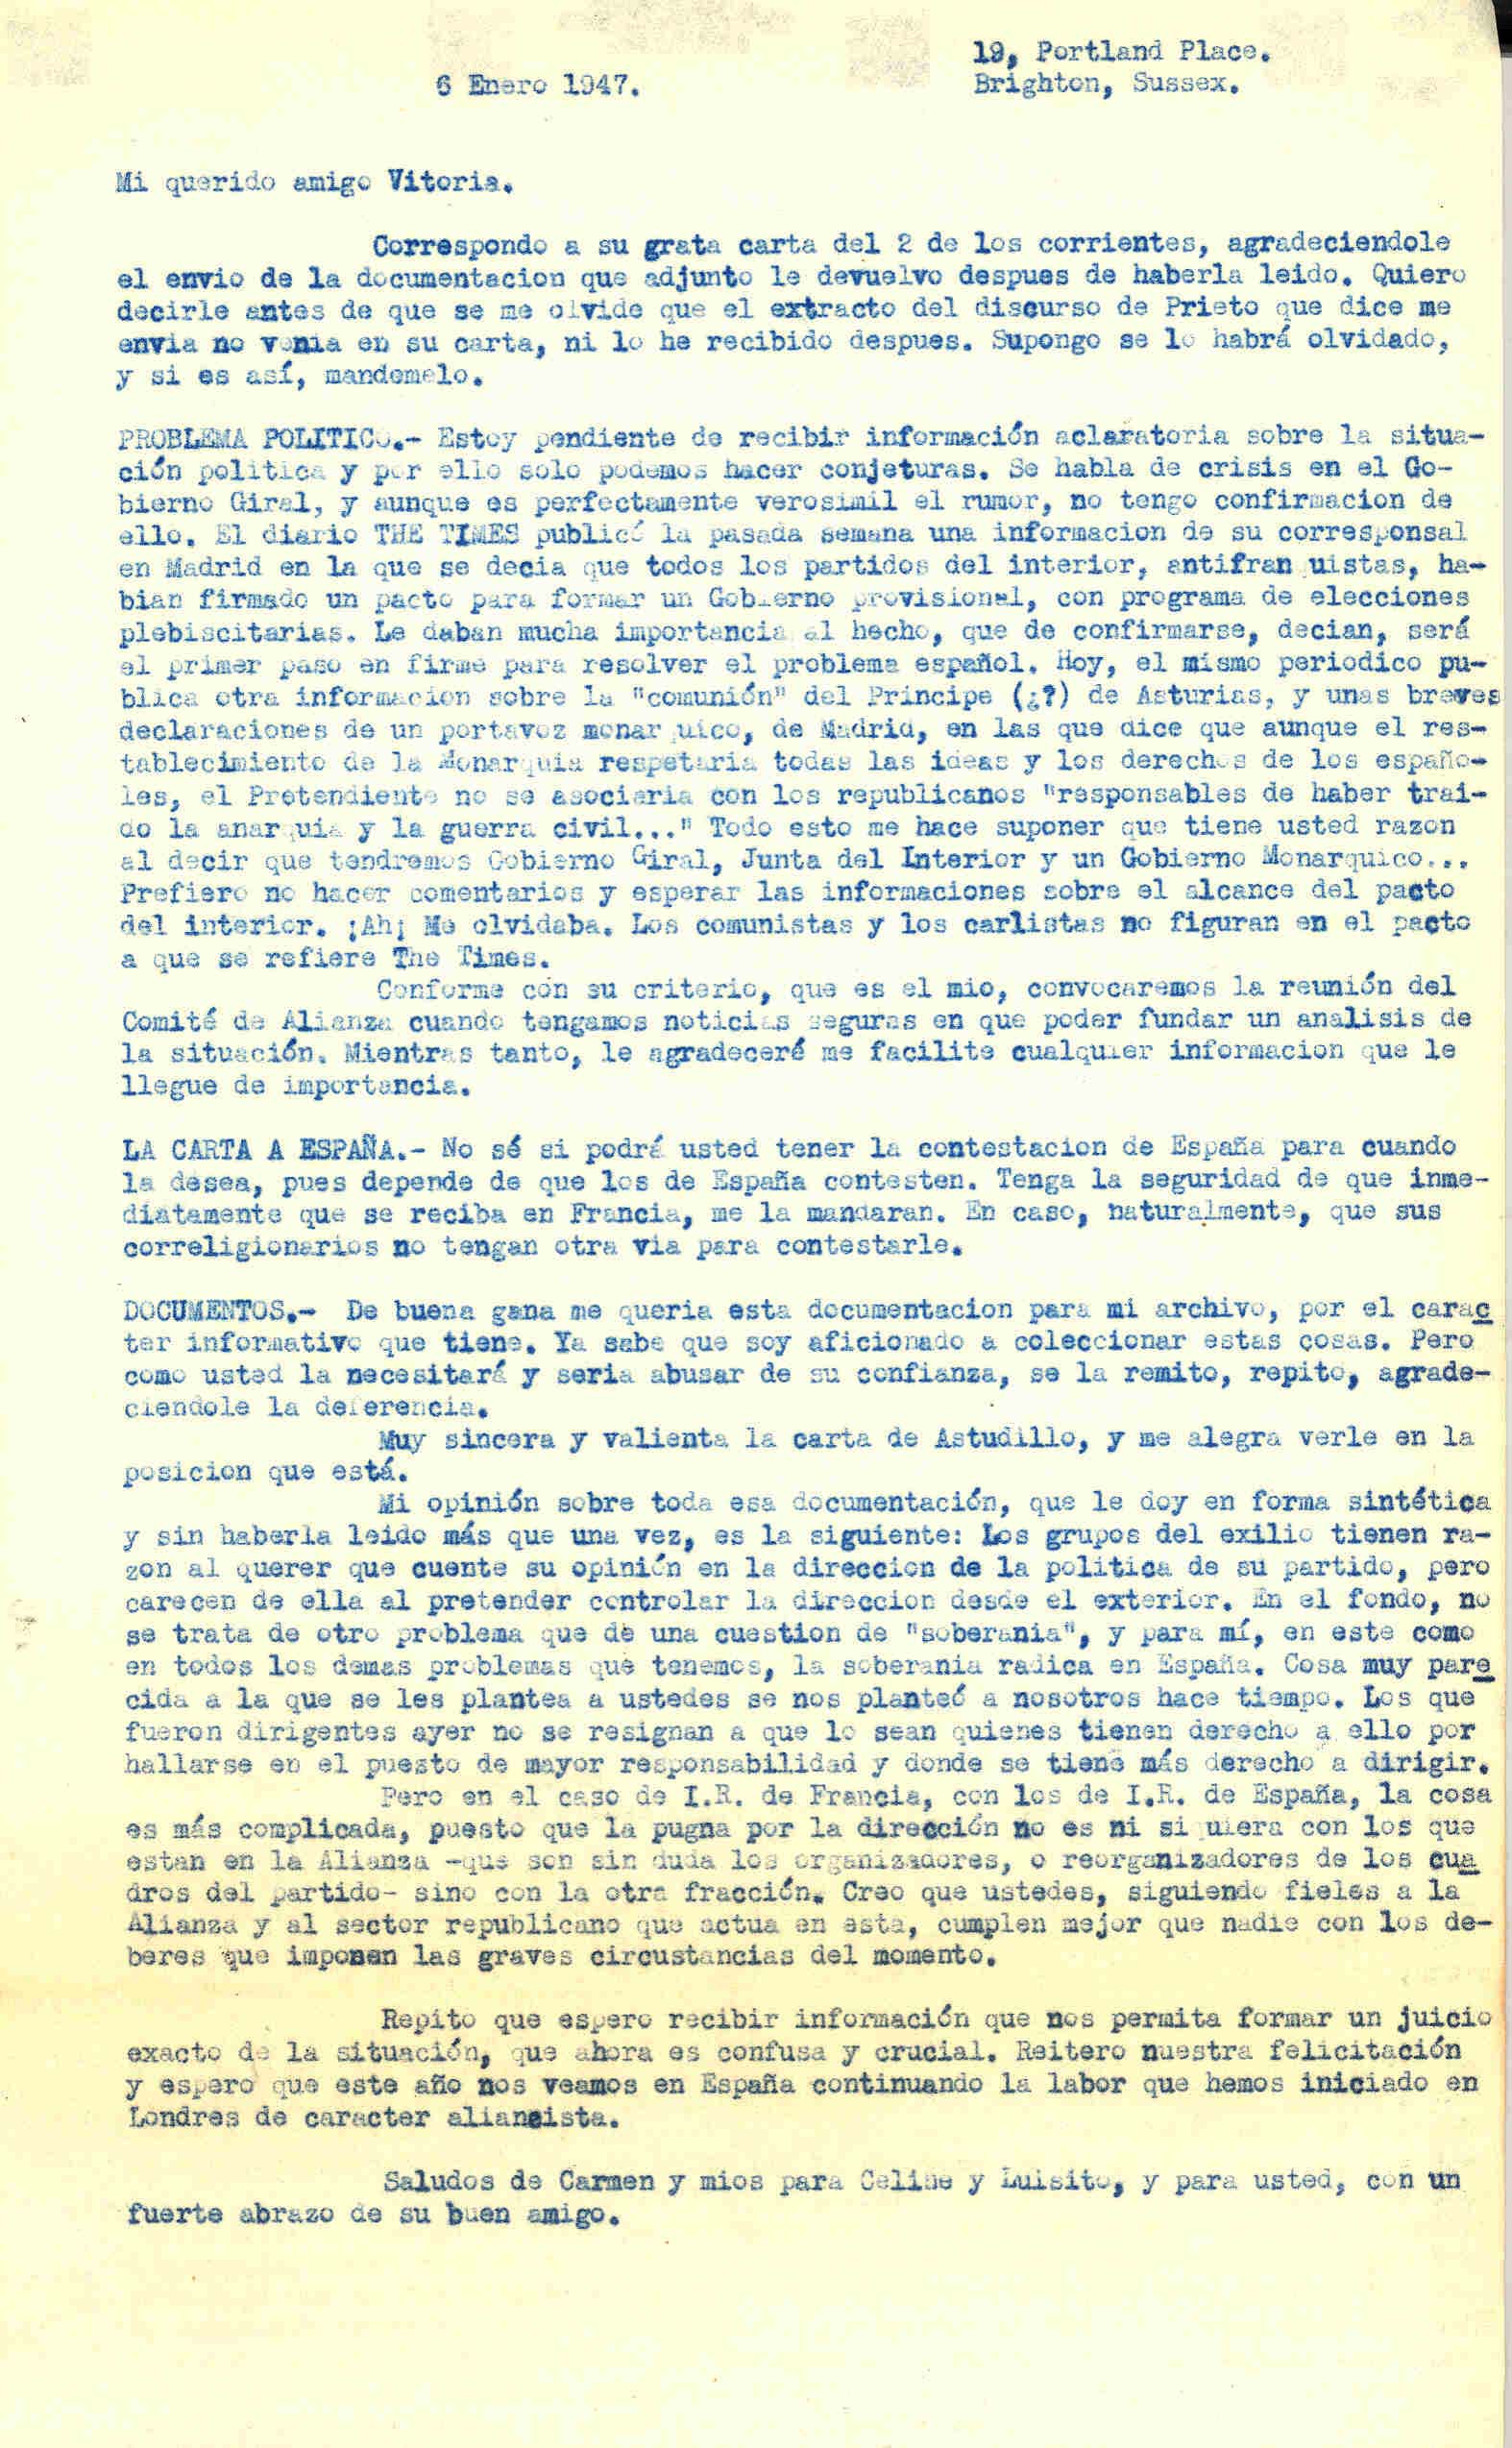 Carta a Roque Victoria en la que habla de la crisis del gobierno Giral y de una información publicada en The Times de un pacto firmando por los partidos del interior antifranquistas para formar un gobierno provisional, excepto los comunistas y carlistas.